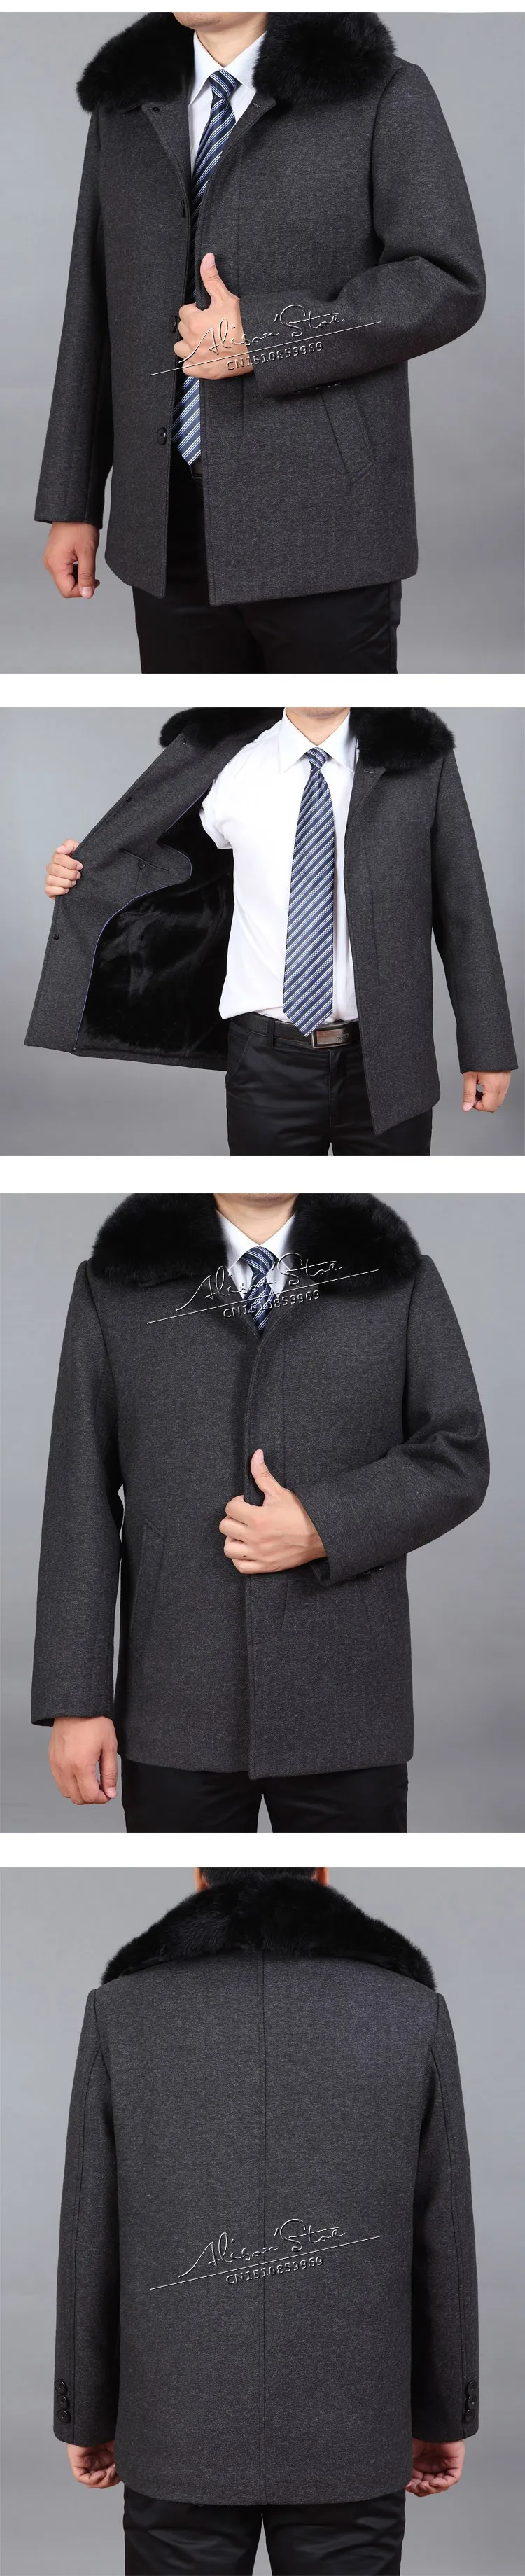 Mu Yuan Yang мужское кашемировое пальто на зиму, пальто, повседневная шерстяная куртка с отложным воротником, Воротник из меха кролика, классическое шерстяное пальто